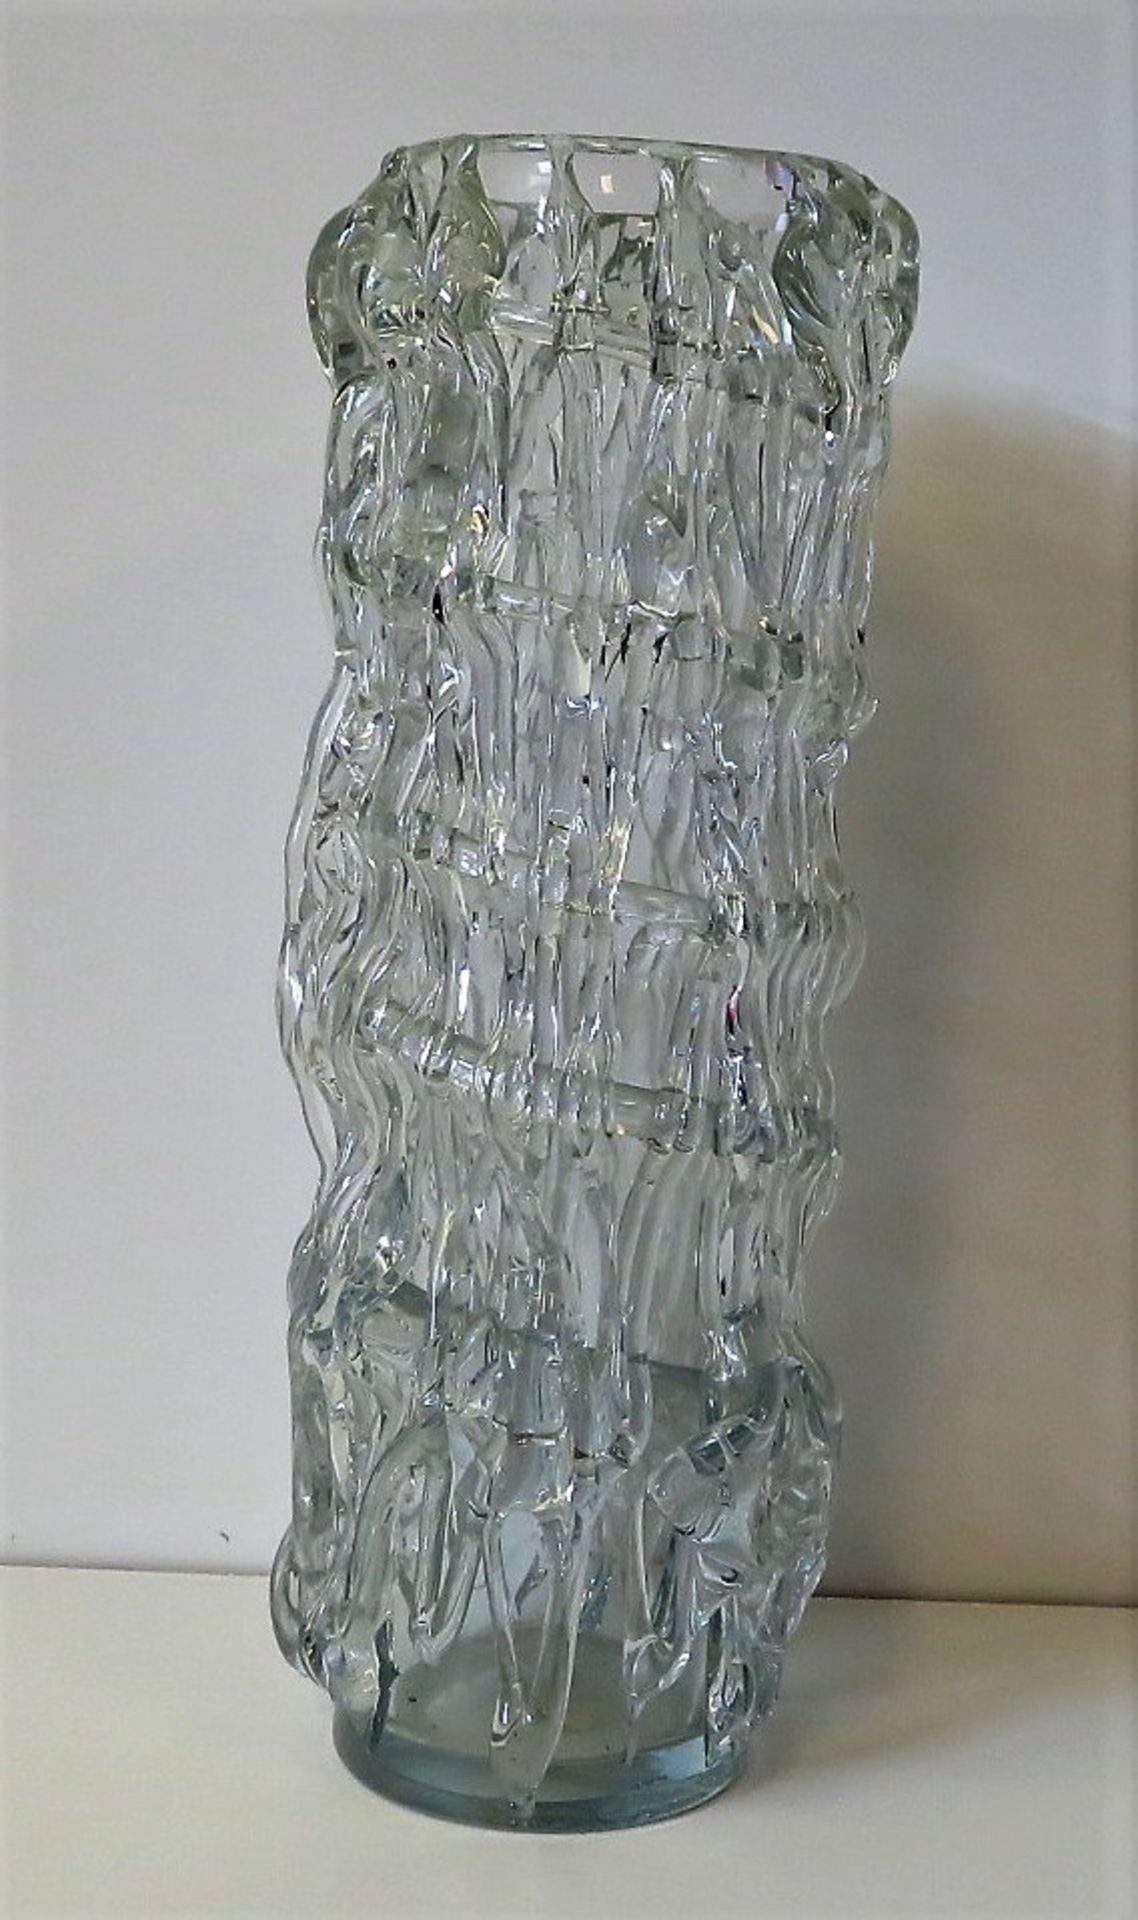 Designer Vase, 1960/70er Jahre, farbloses Glas mit aufgelegten Fäden, h 41 cm, d 14,5 cm.